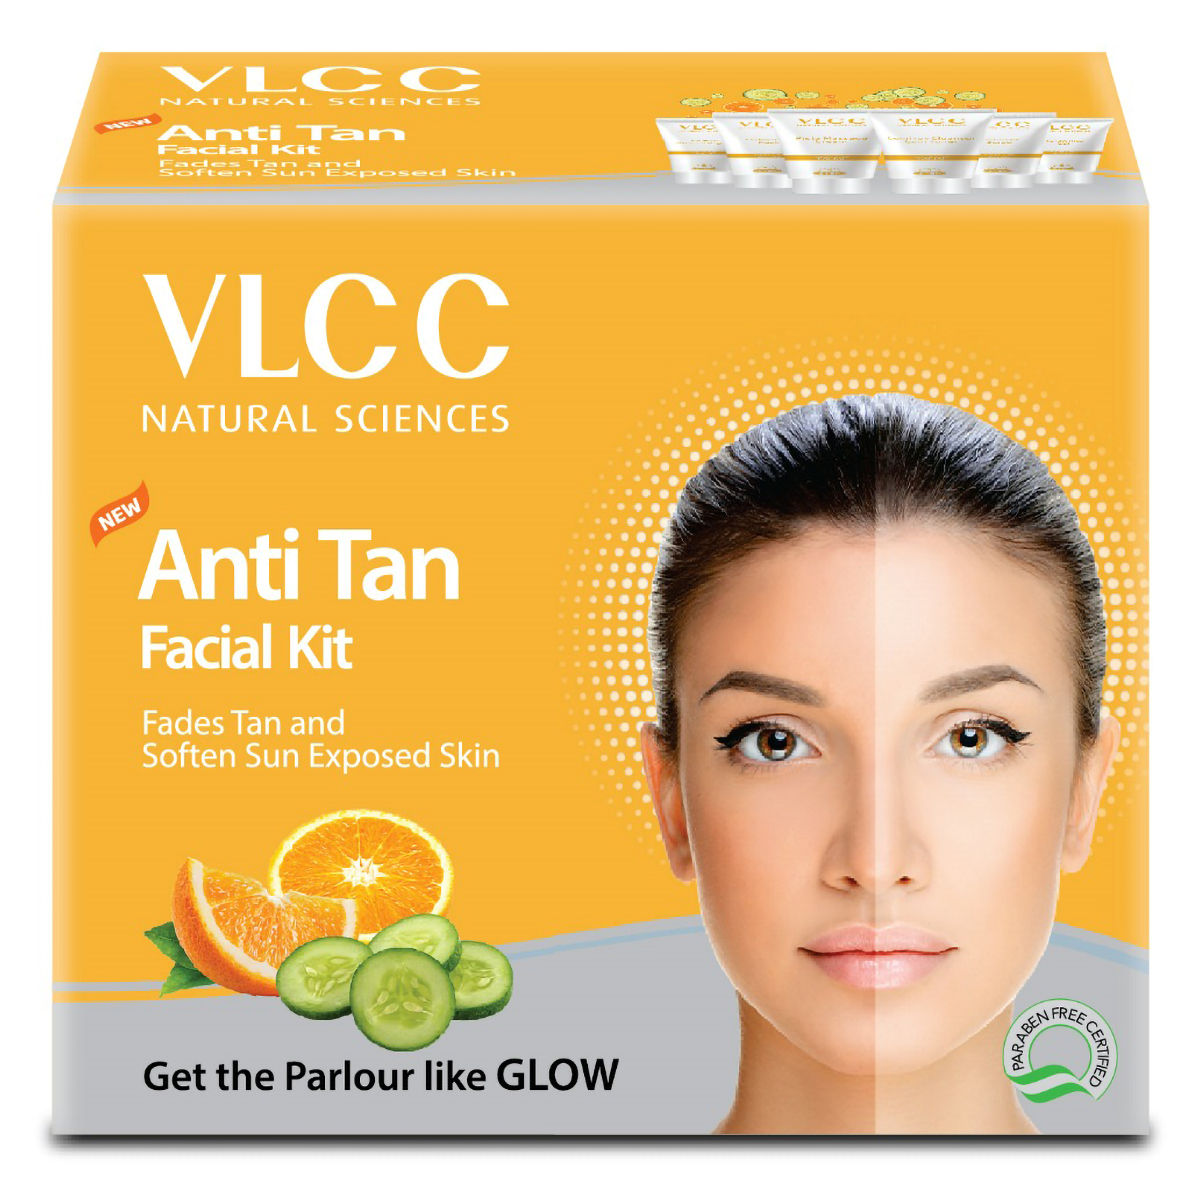 Buy VLCC New Anti Tan Facial Kit, 1 Count Online